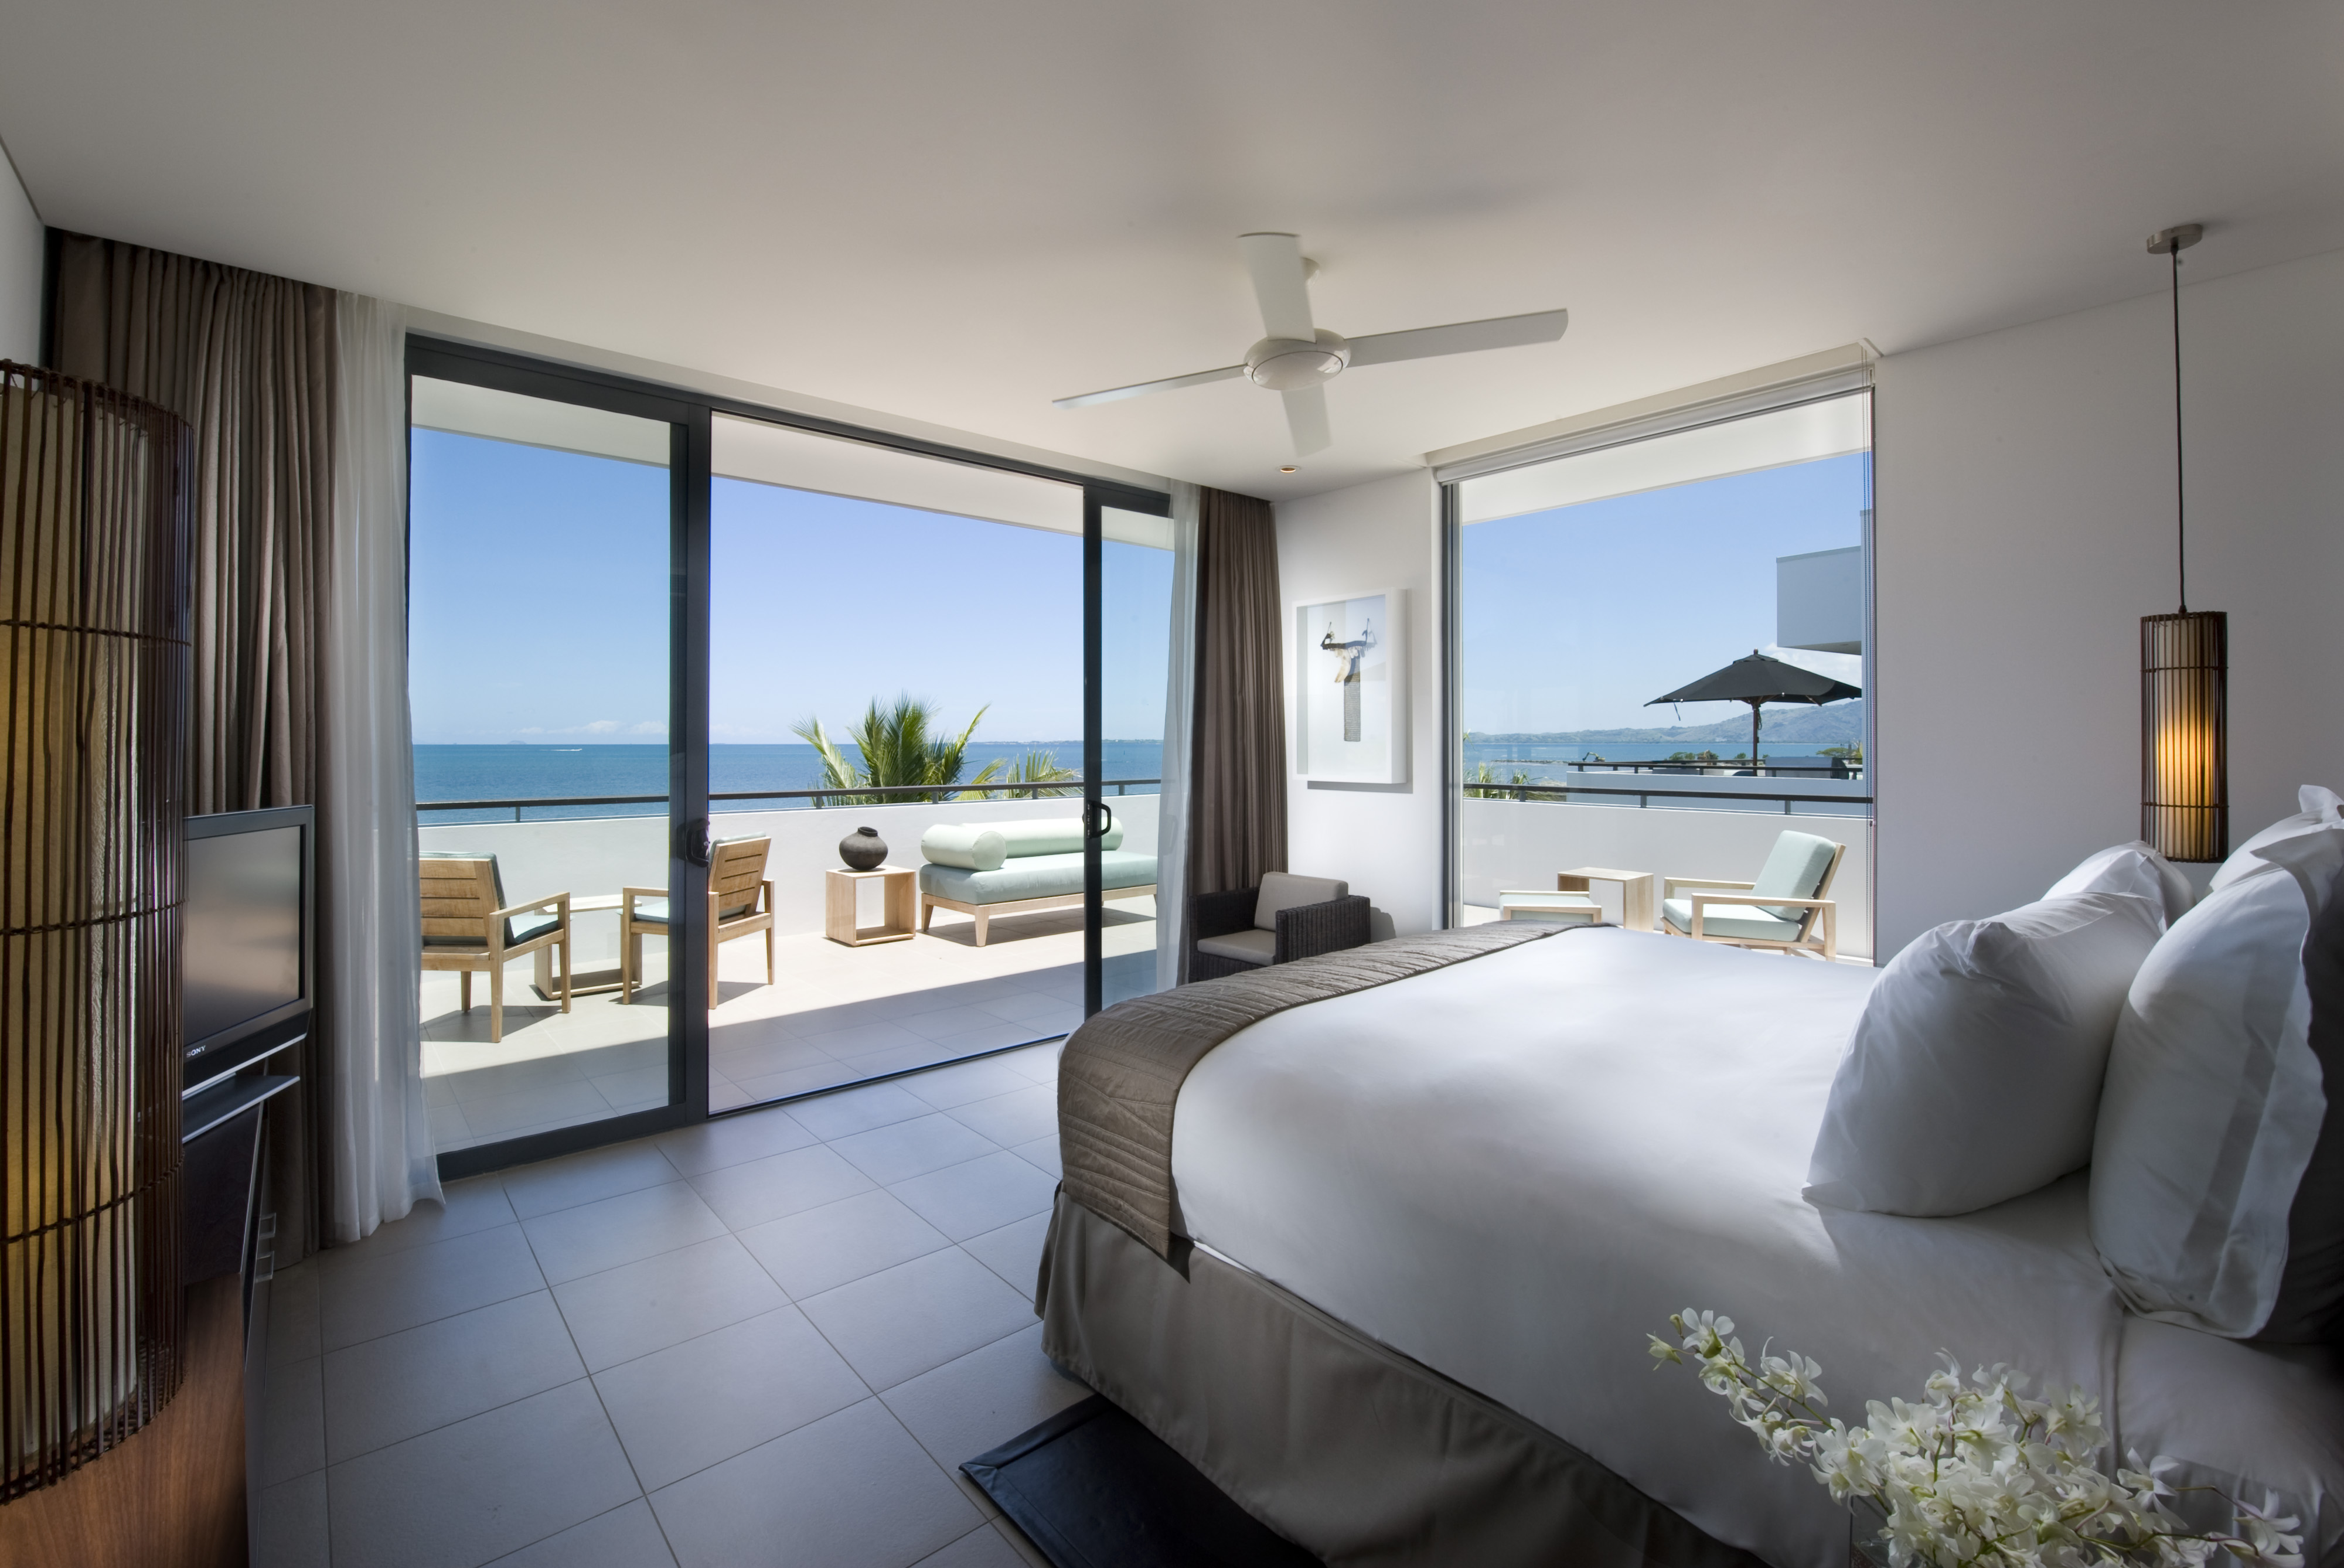 Beautiful Bedroom Balcony Ideas HomesFeed